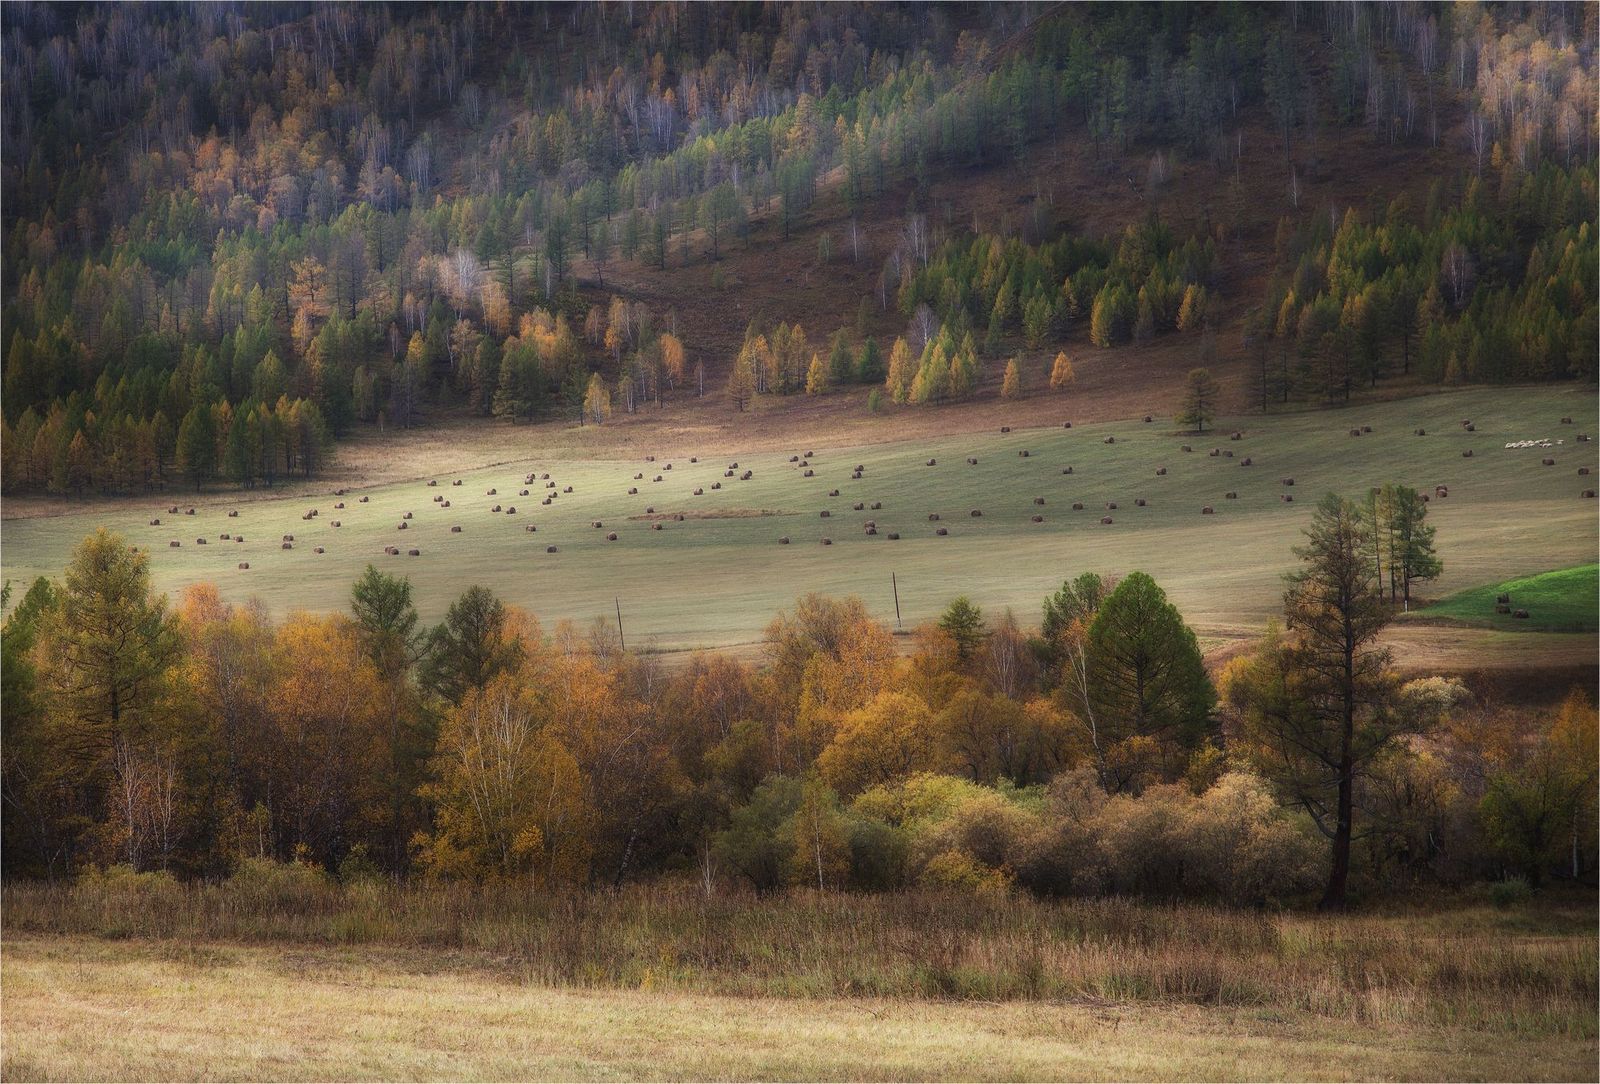 Velvet autumn of Altai - Altai, Russia, Gotta go, Nature, Autumn, Photo, The photo, Landscape, Longpost, Altai Republic